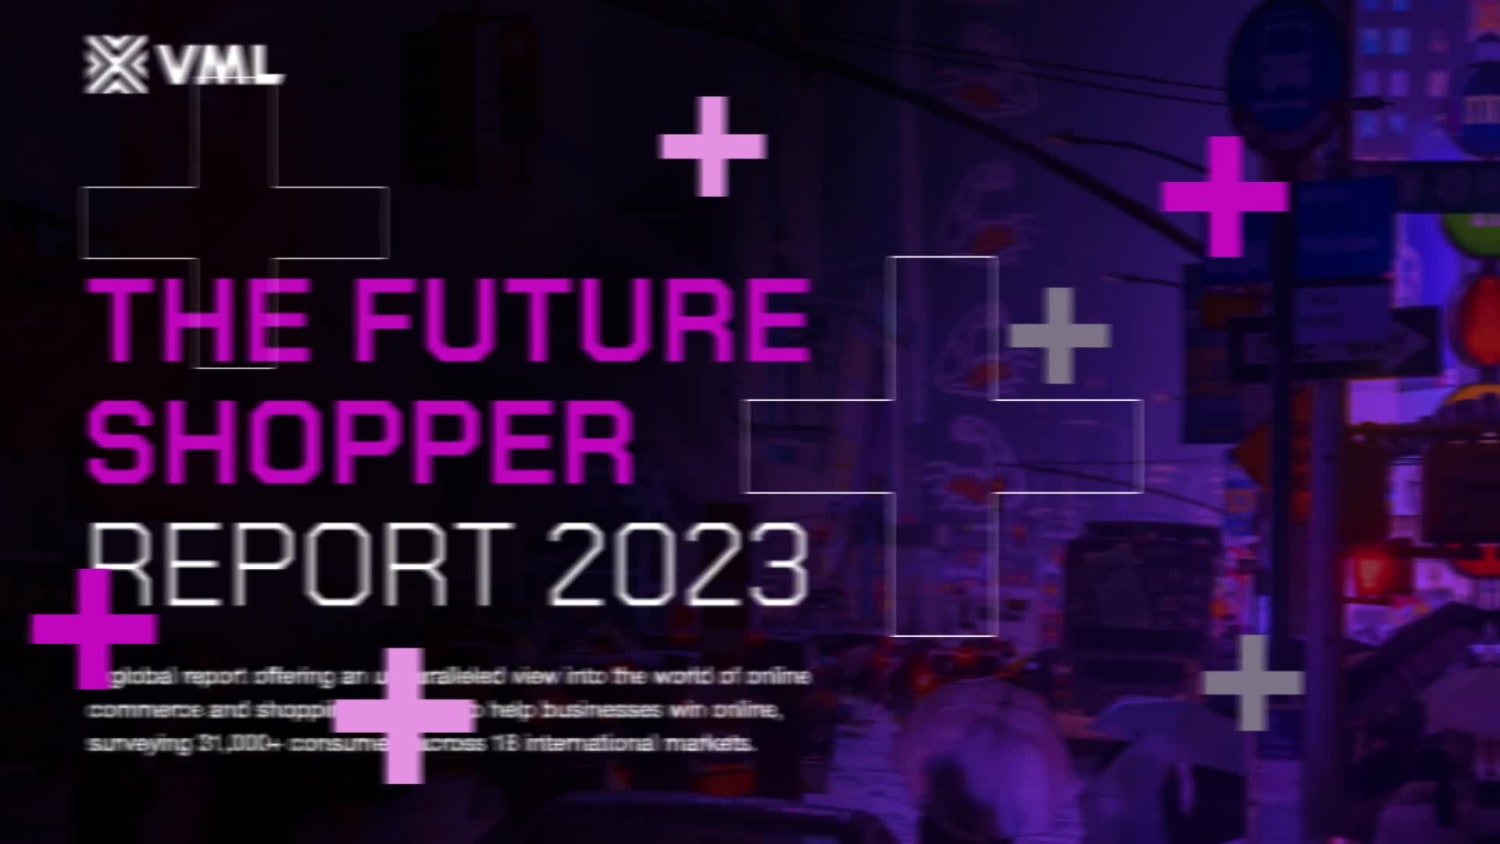 The Future Shopper 2023